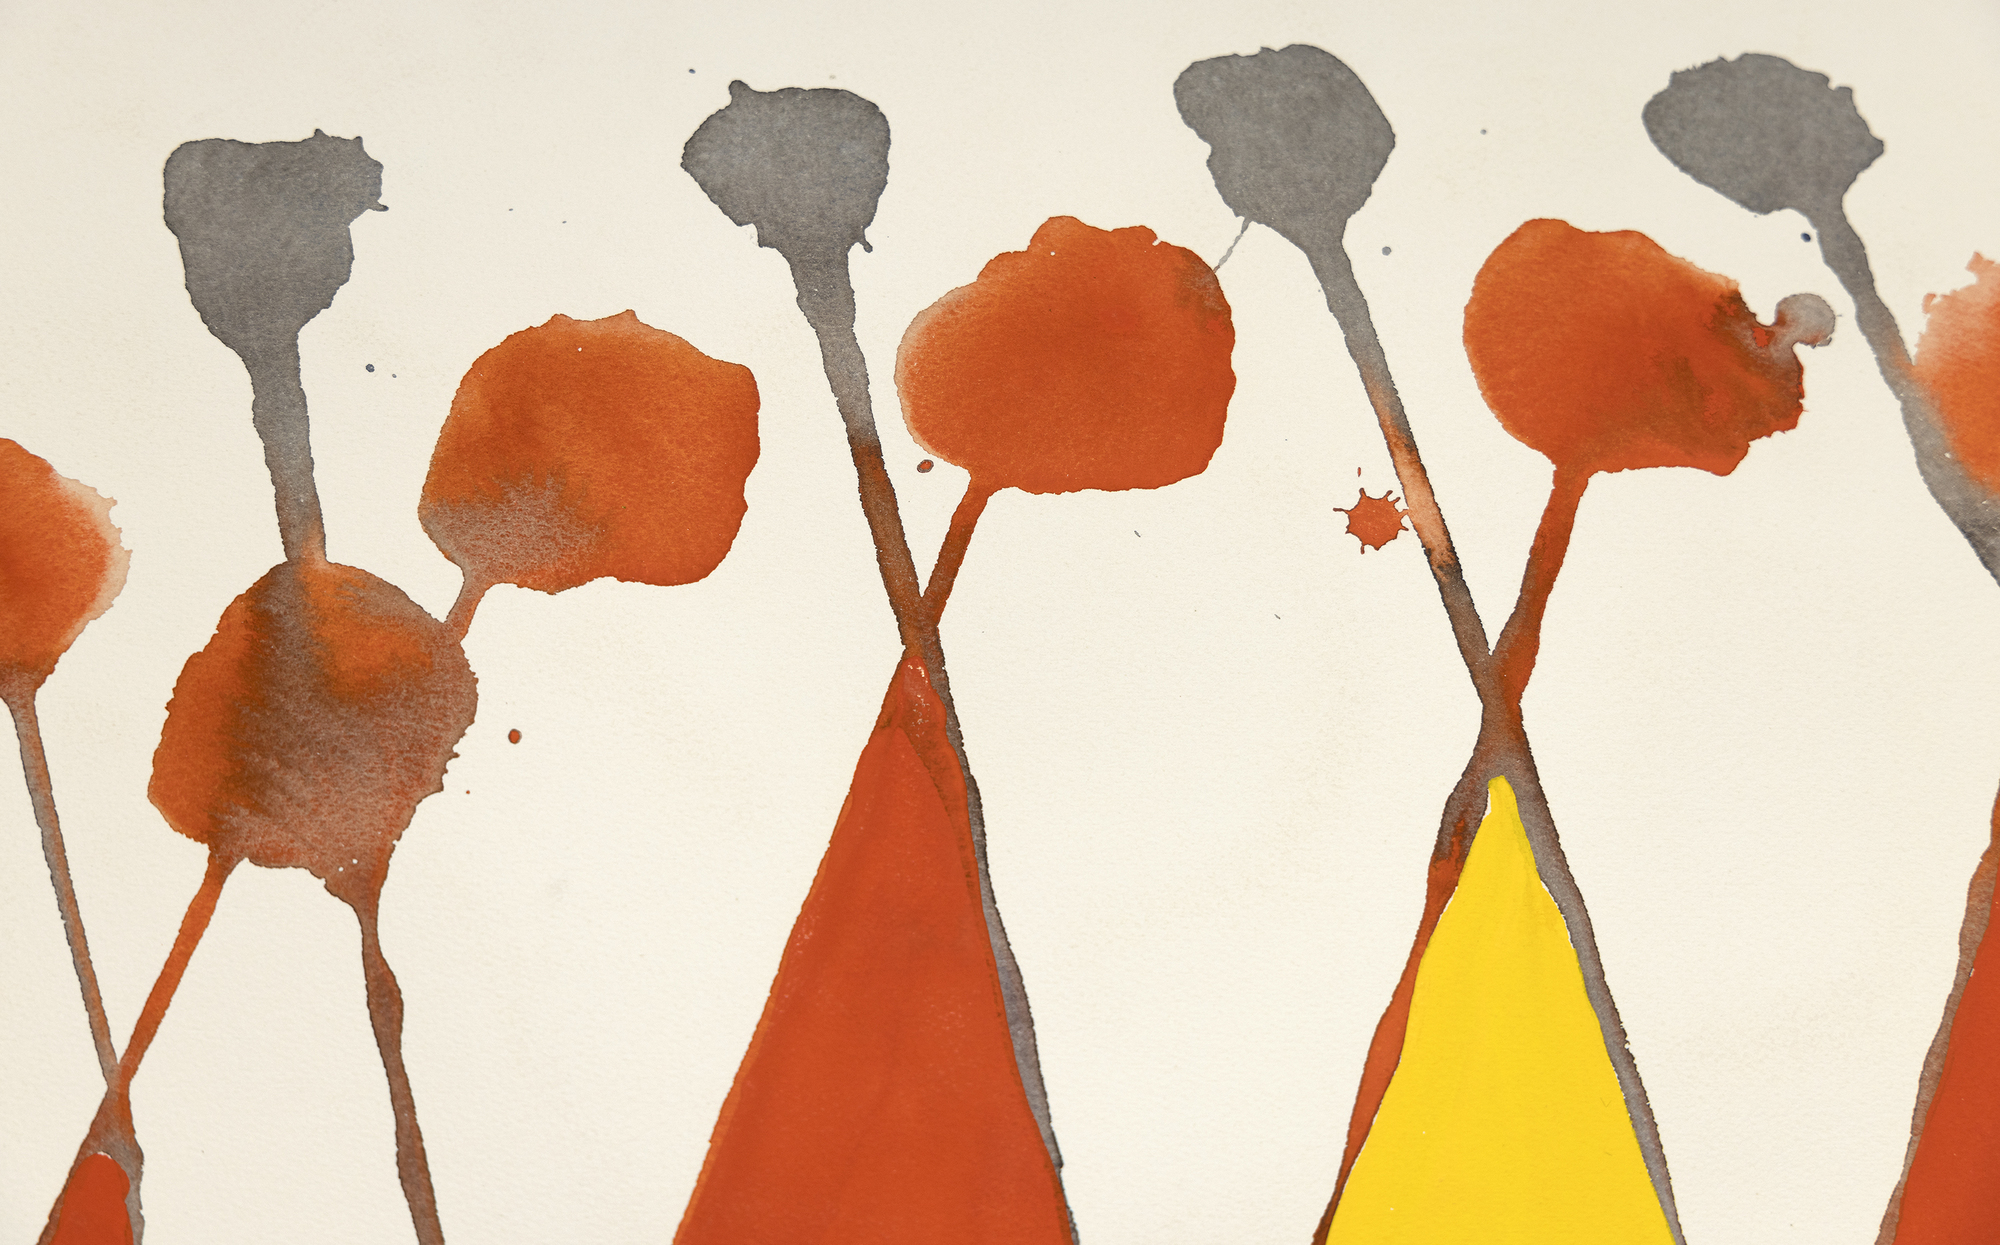 &quot;Wigwam rouge et jaune&quot;, ein fesselndes Gouache-Gemälde von Alexander Calder, ist eine lebendige Erkundung von Design und Farbe. Die Komposition wird von einem Gitter aus diagonalen Linien dominiert, die sich in der Nähe ihres Scheitelpunkts kreuzen, und strahlt ein dynamisches Gleichgewicht aus. Calder bringt mit roten und gelben Rautenformen ein Element der Laune ins Spiel, das dem Werk Verspieltheit verleiht und eine festliche Atmosphäre schafft. Rote Kugeln am Scheitelpunkt der rechten Linien erwecken einen skurrilen Eindruck, während kleinere graue Kugeln auf den linken Linien für Kontrast und Gleichgewicht sorgen. Calders meisterhafte Verschmelzung von Einfachheit und lebendigen Designelementen macht Wigwam rouge et jaune zu einem visuellen Vergnügen.